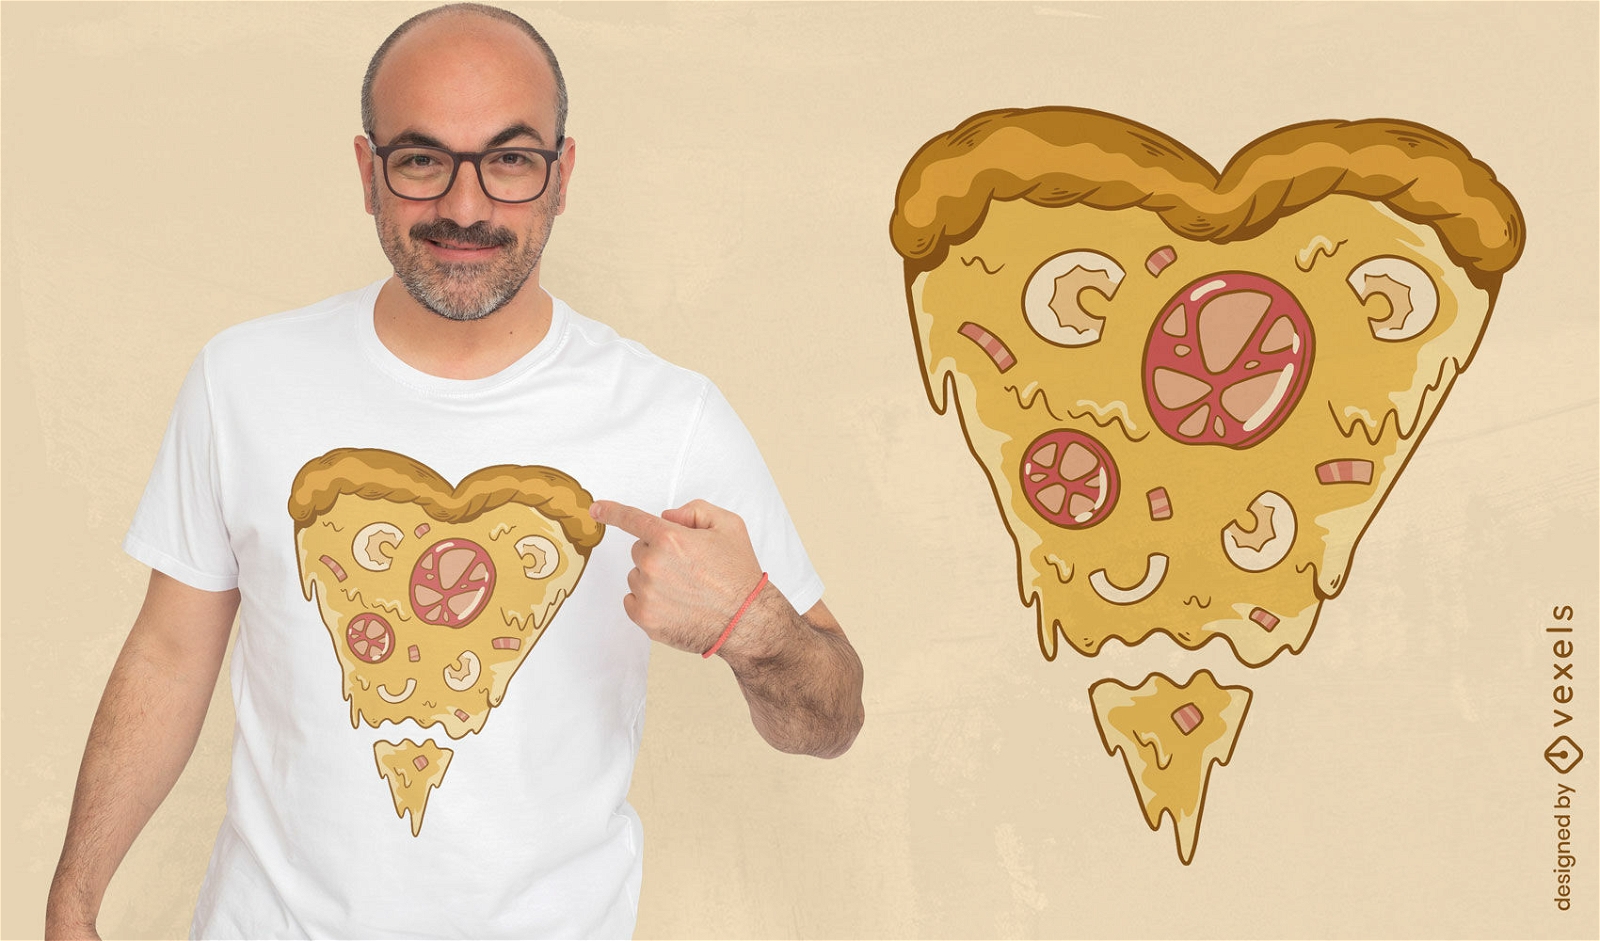 Pizza shaped like a heart t-shirt design